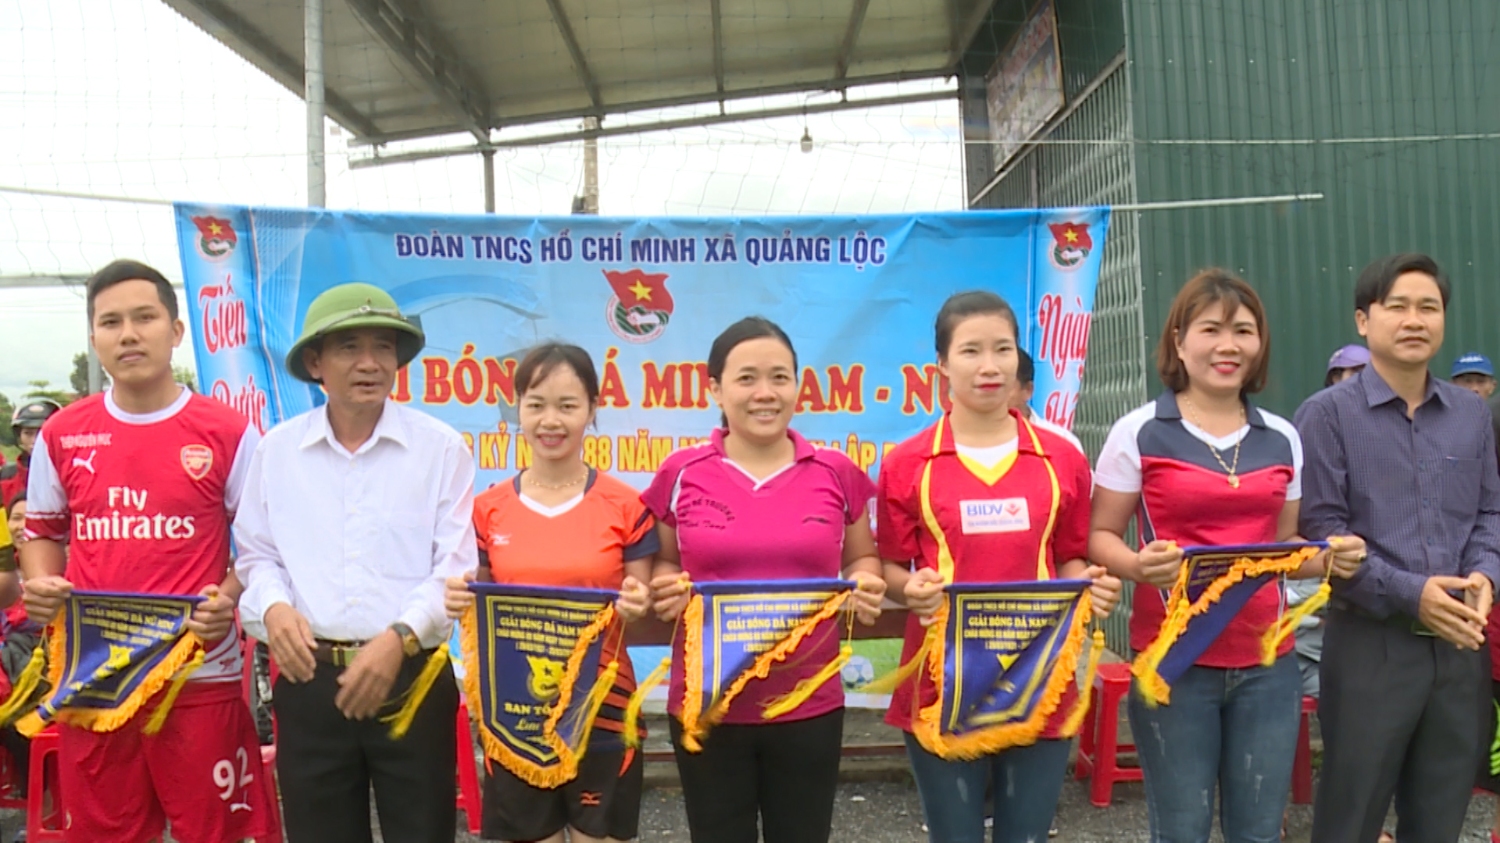 Đoàn thanh niên xã Quảng Lộc tổ chức giải bóng đá mini nam - nữ năm 2019.